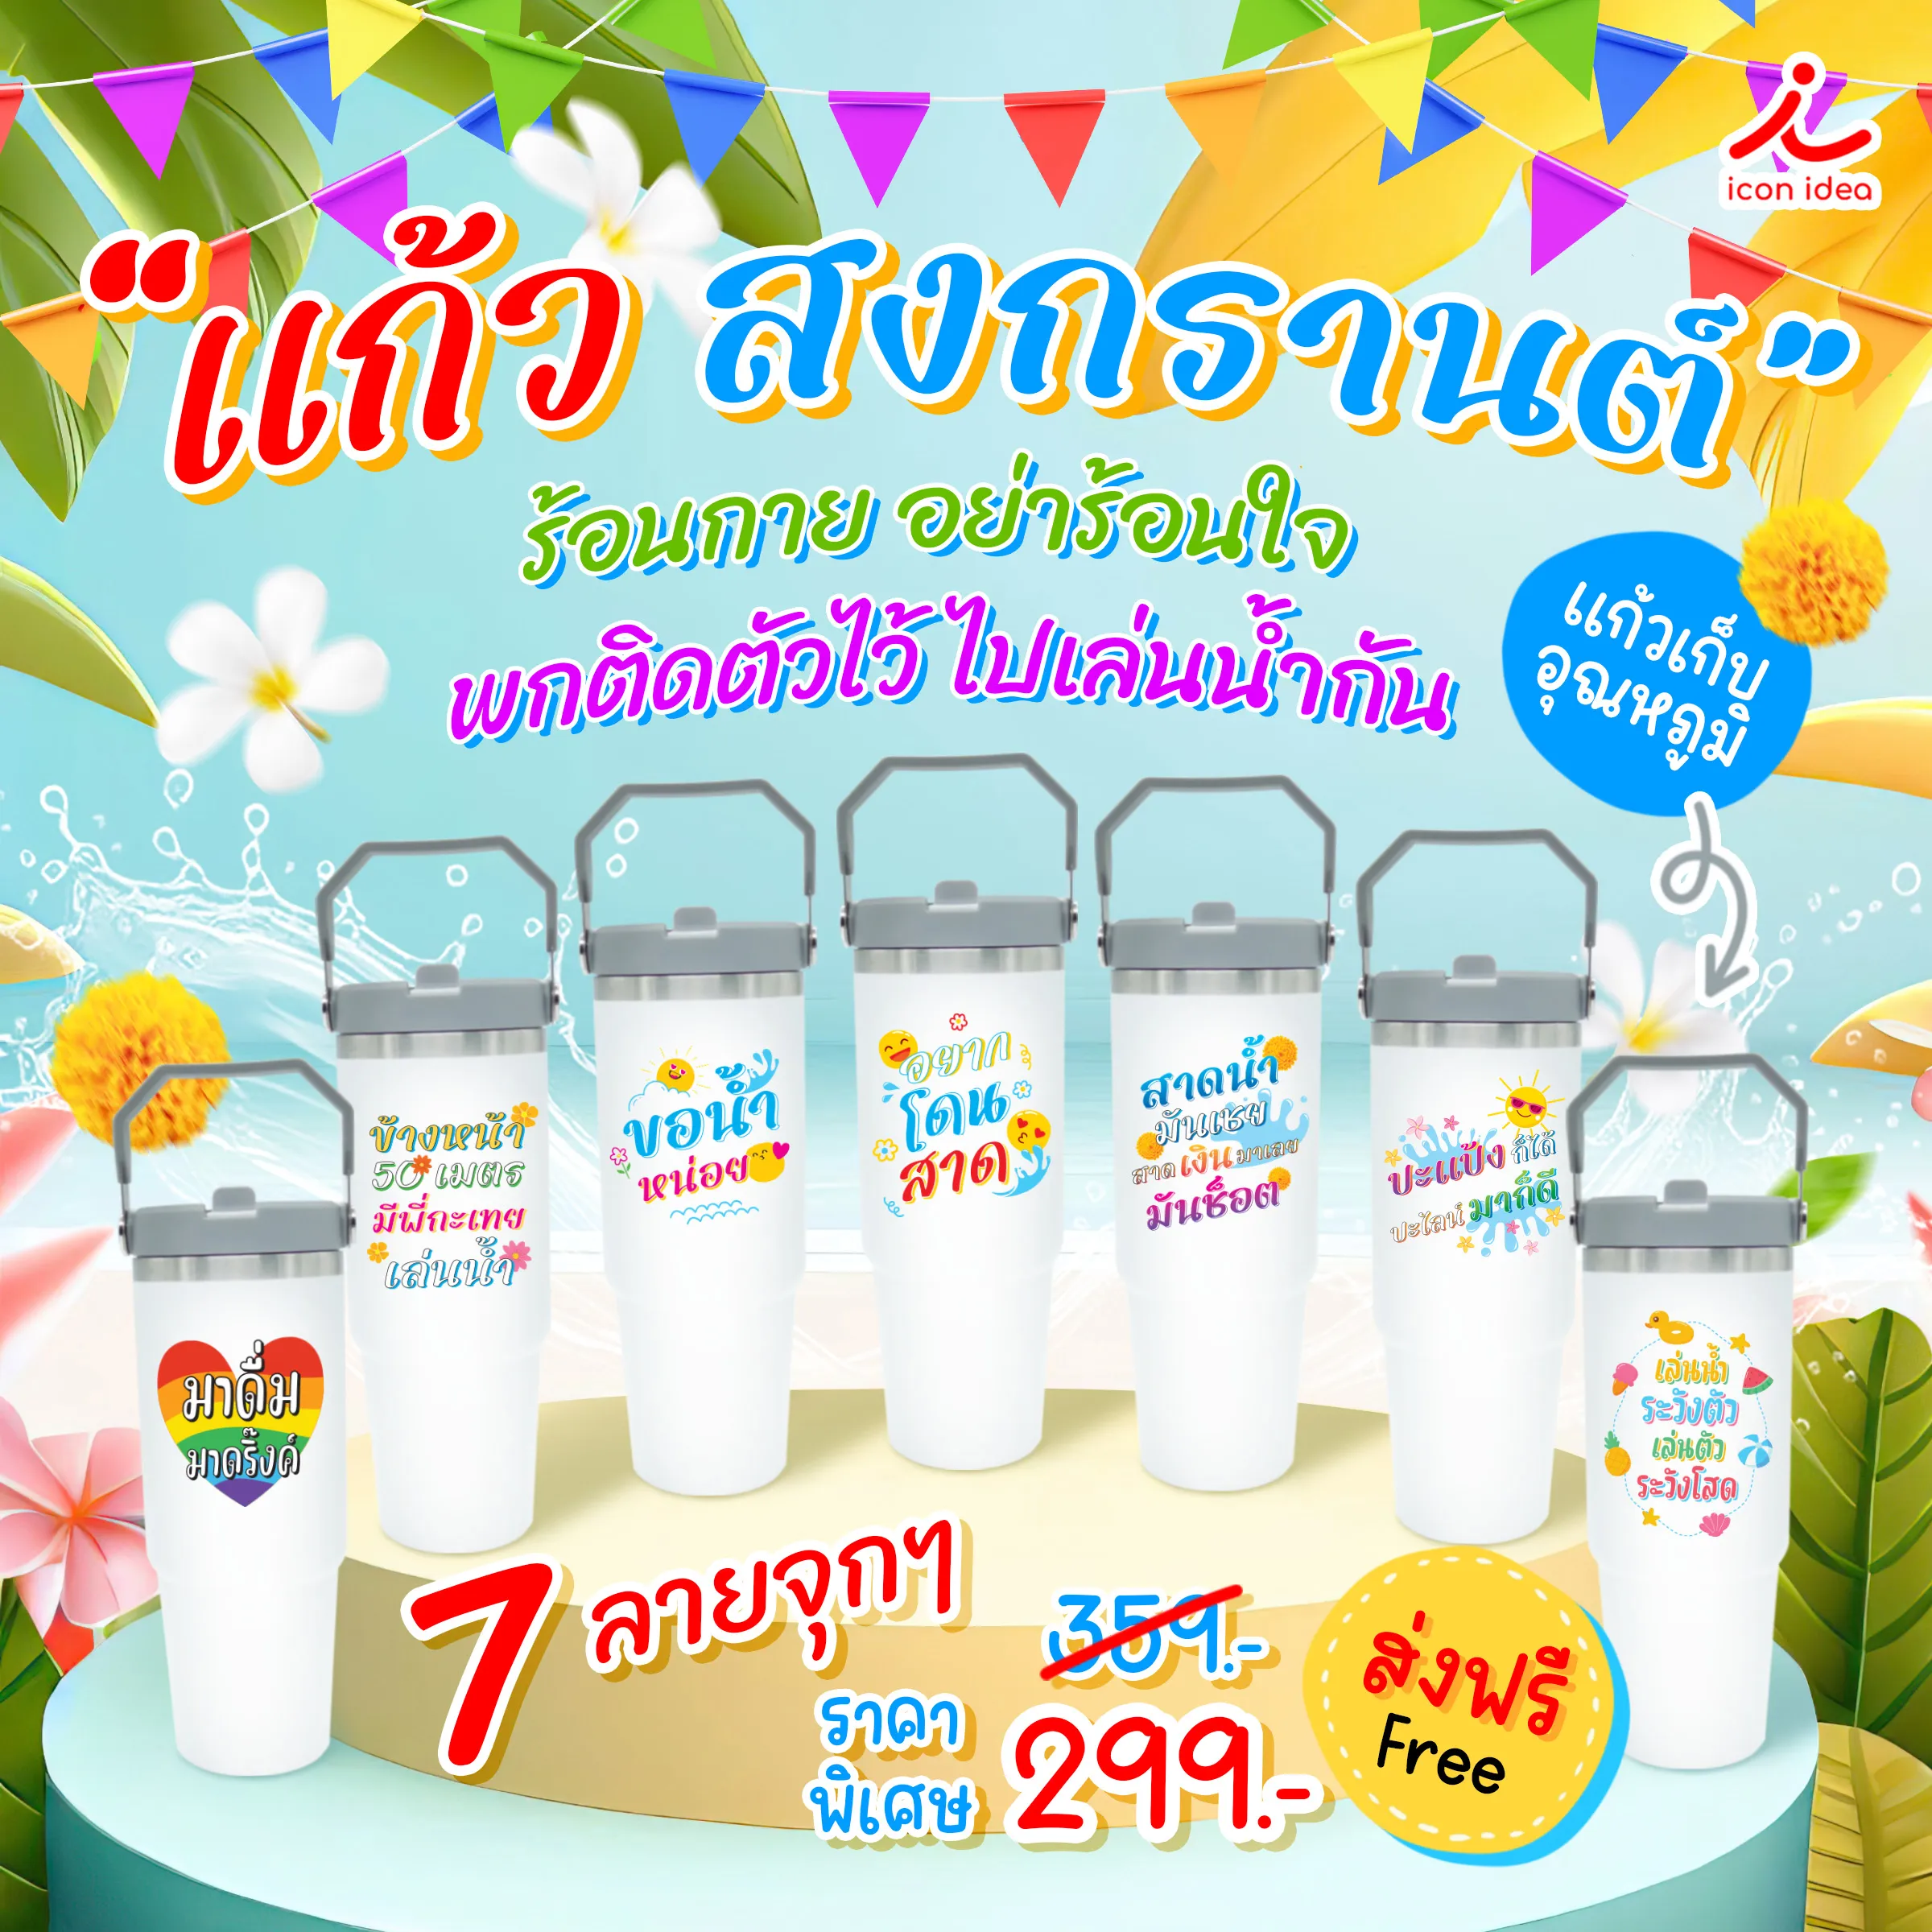 Songkran-glass v